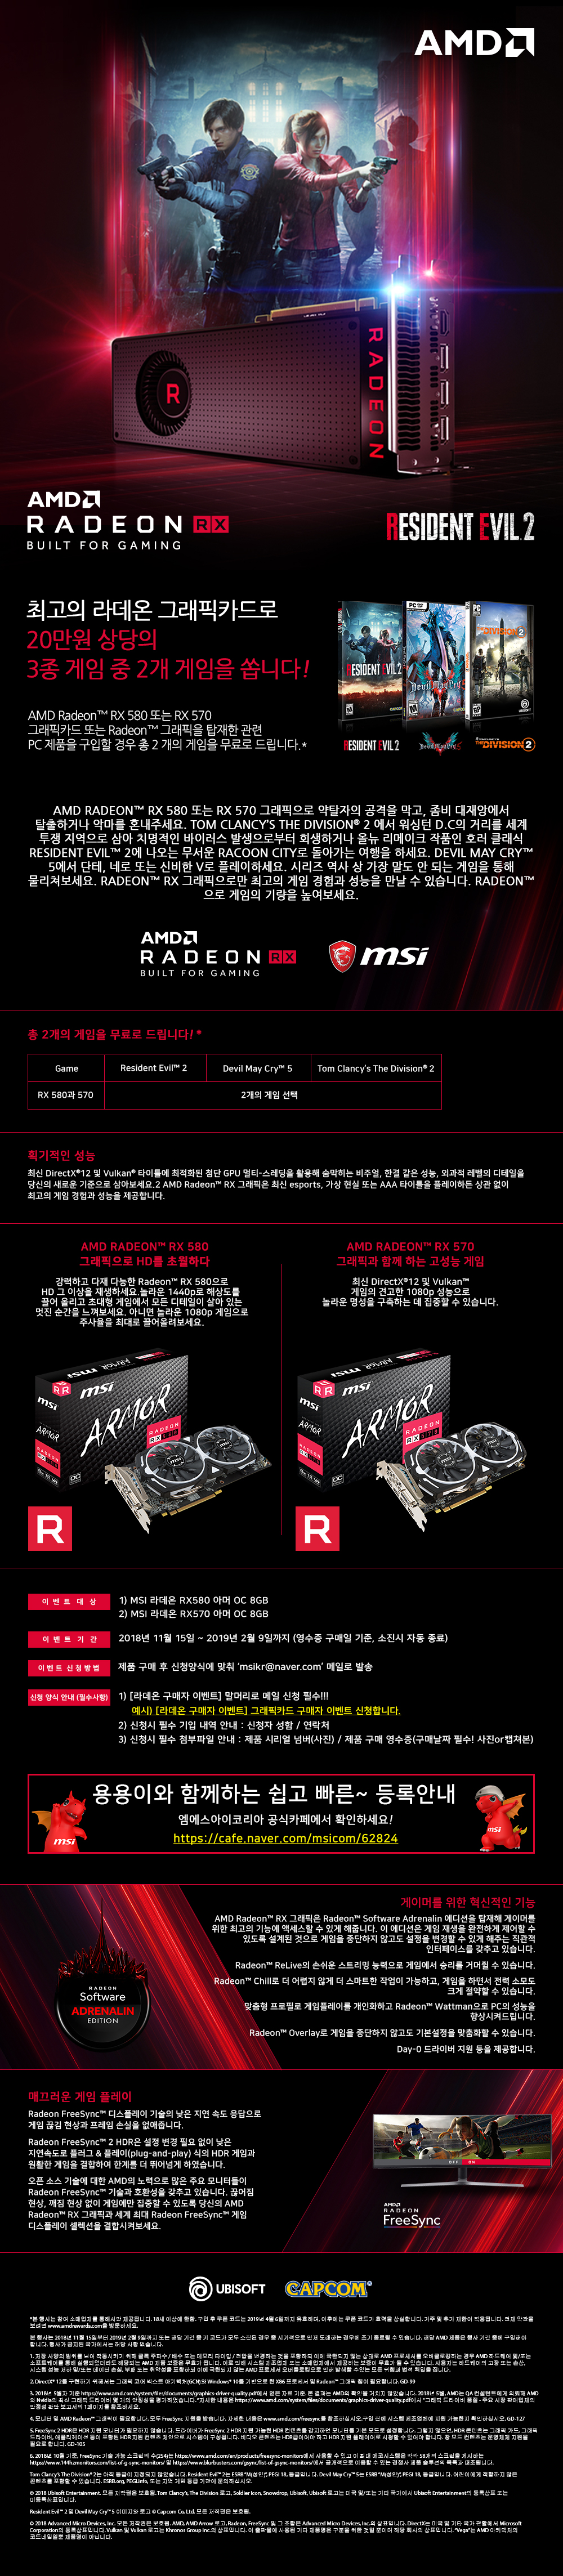 1 MSI 라데온 RX 580 570 아머 구매자 이벤트 (20만원대 게임 3종 중 2개 증정).jpg